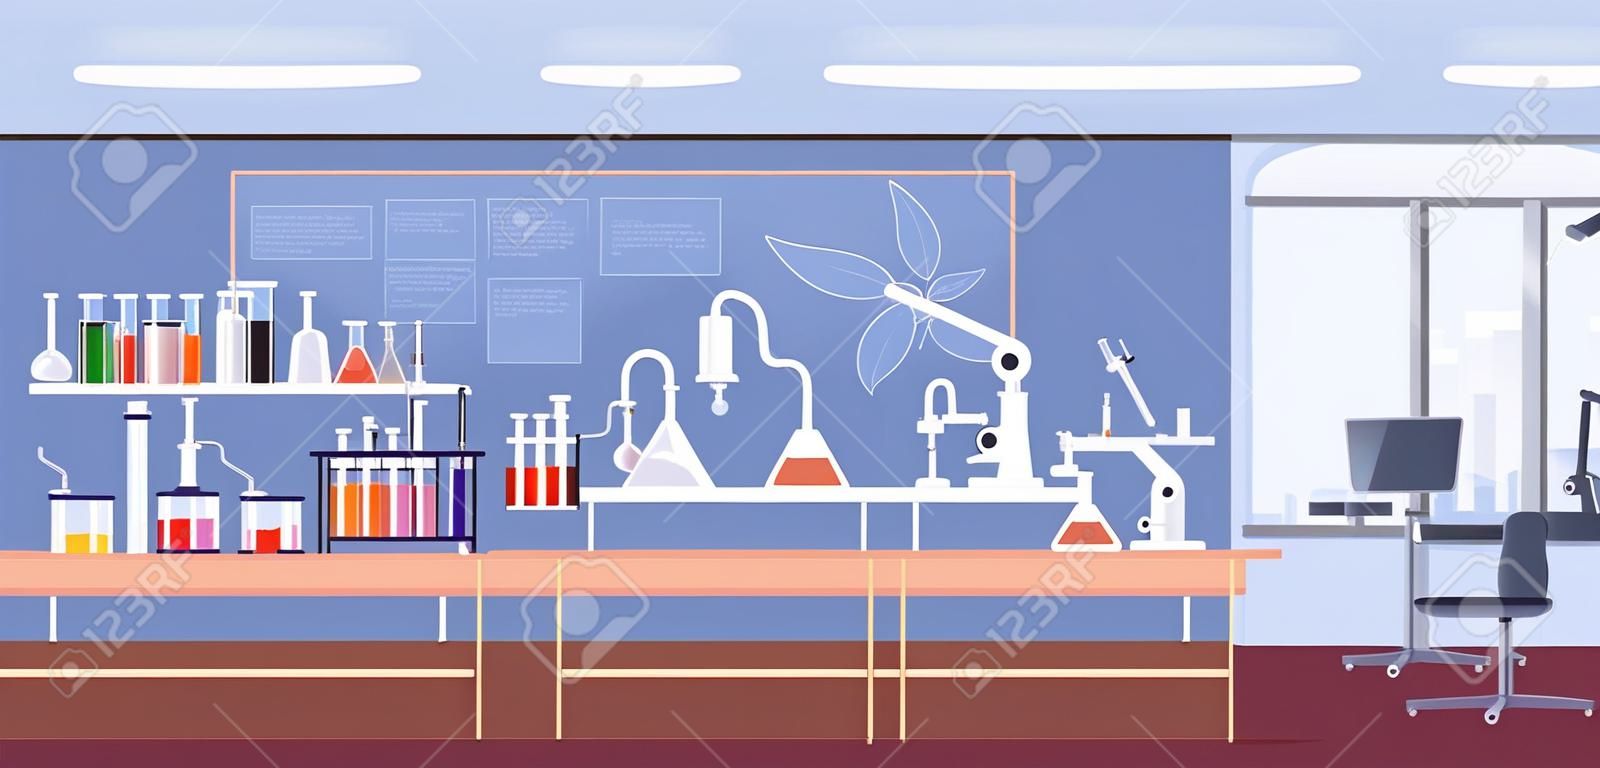 Wnętrze laboratorium chemicznego z meblami, mikroskopem, kolbami i probówkami. eksperyment w klasie chemii w szkole. kolorowy płaski kreskówka wektor ilustracja pokoju badawczego ze sprzętem